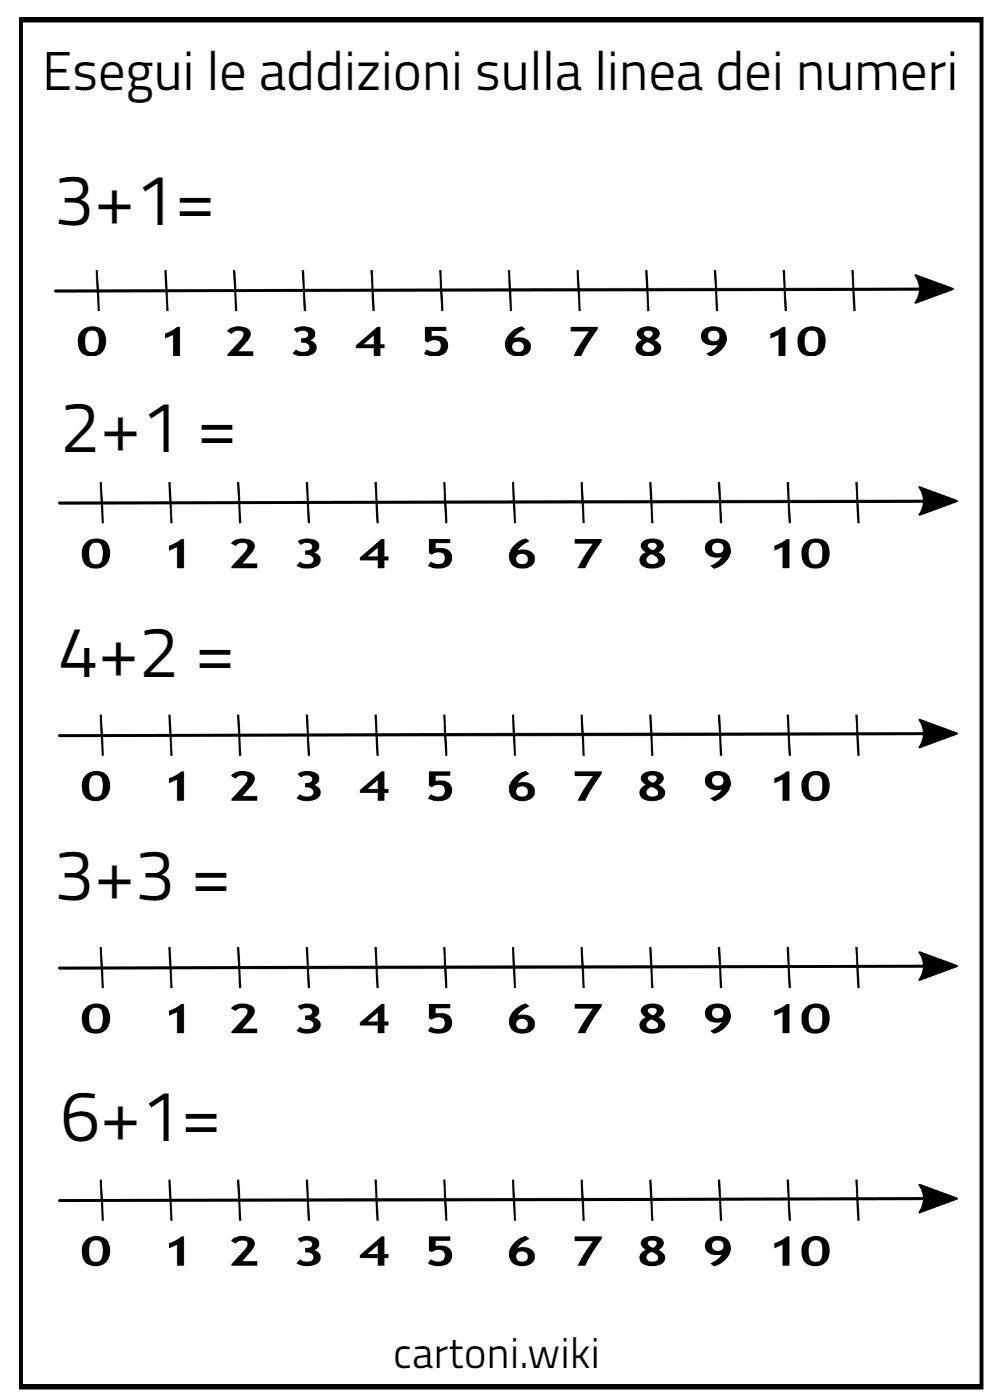 Semplici addizioni sulla linea dei numeri